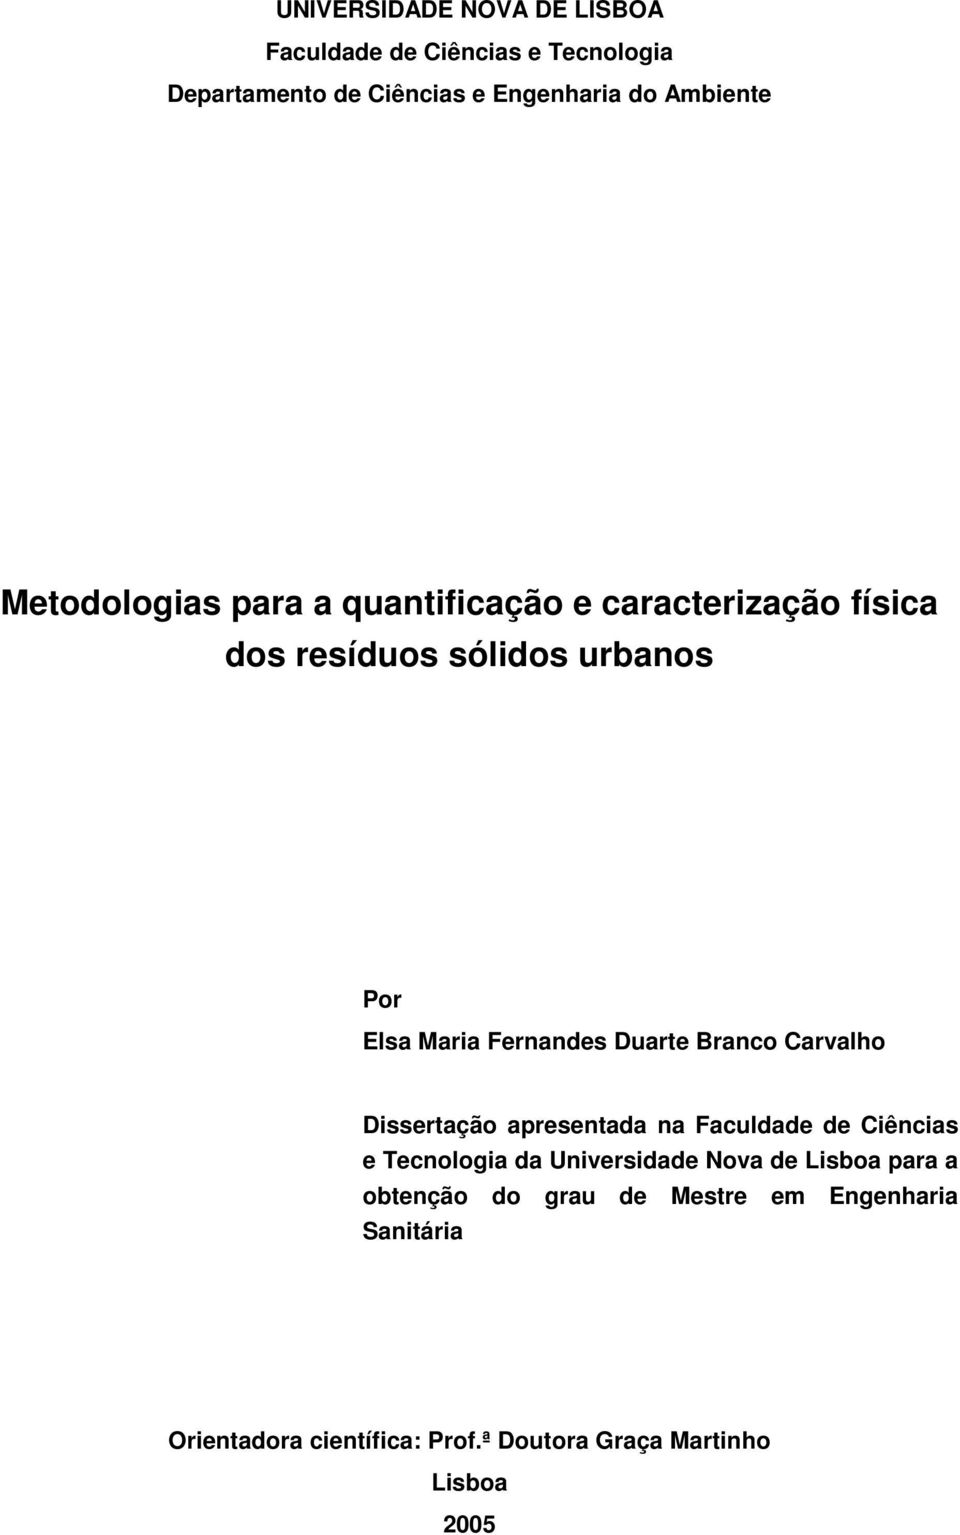 Duarte Branco Carvalho Dissertação apresentada na Faculdade de Ciências e Tecnologia da Universidade Nova de Lisboa